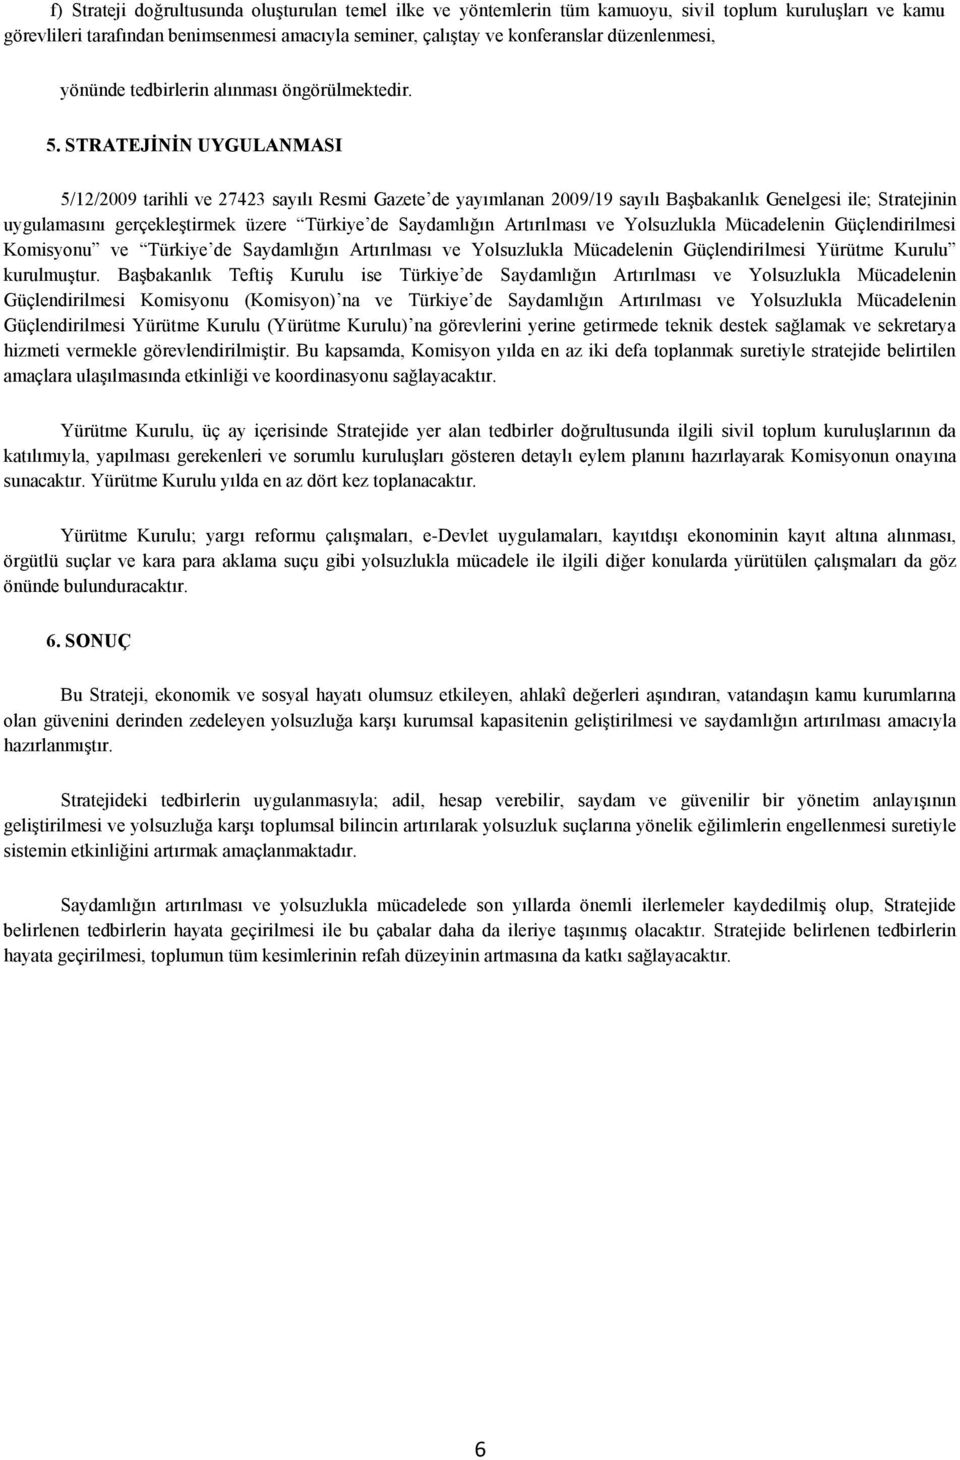 STRATEJĠNĠN UYGULANMASI 5/12/2009 tarihli ve 27423 sayılı Resmi Gazete de yayımlanan 2009/19 sayılı Başbakanlık Genelgesi ile; Stratejinin uygulamasını gerçekleştirmek üzere Türkiye de Saydamlığın